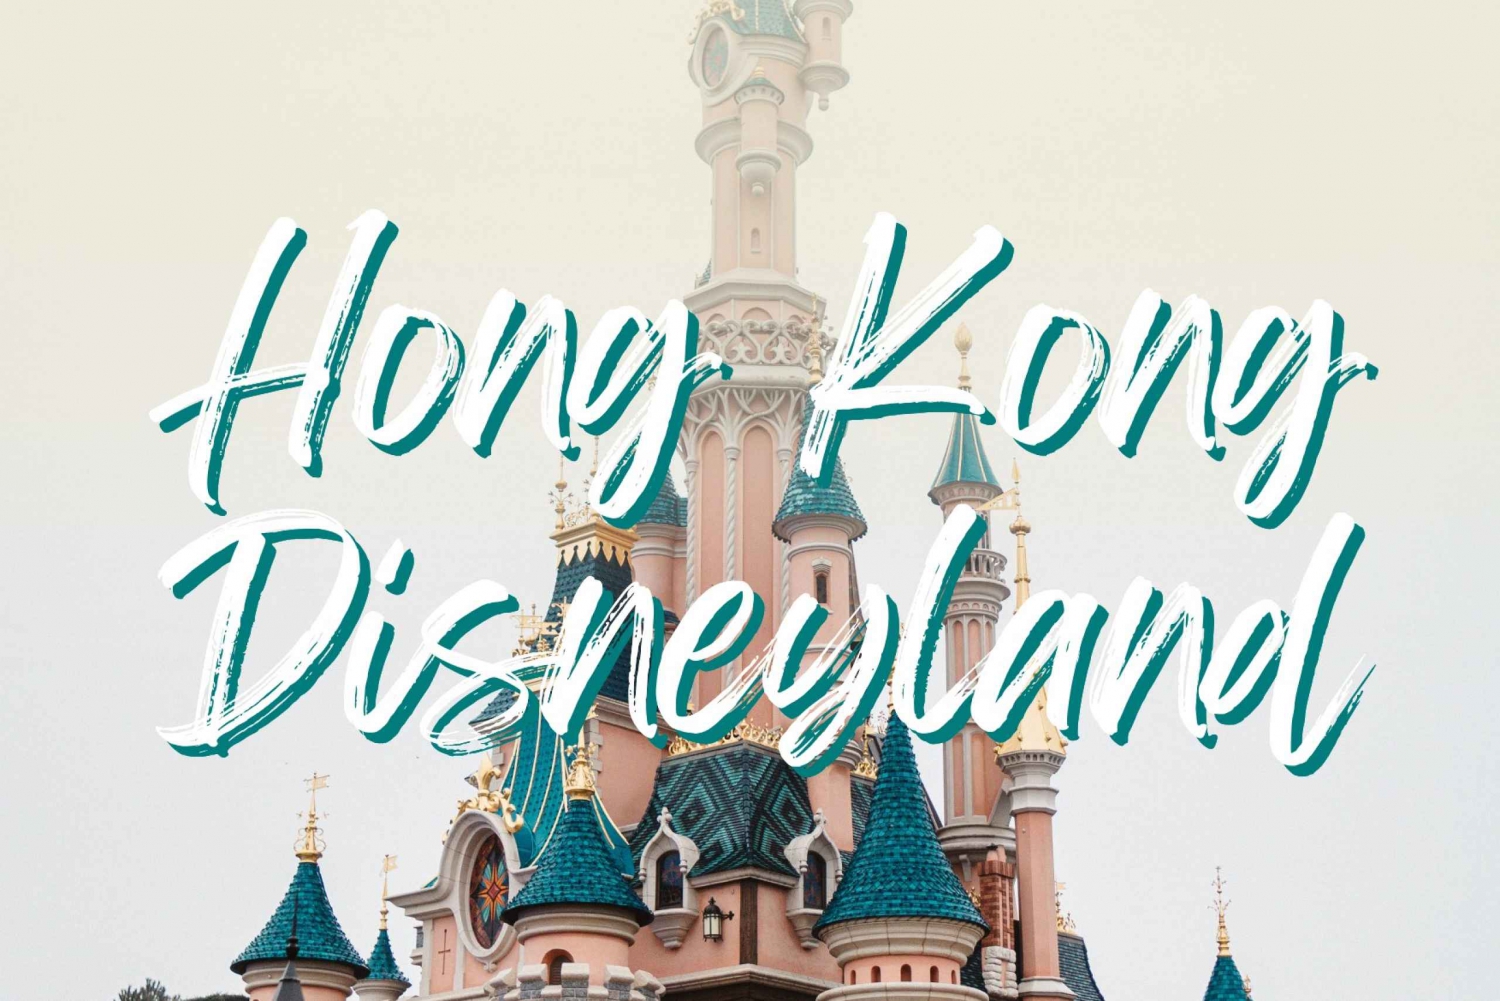 Pacchetto Hongkong 2: Disneyland con tour gratuito della città